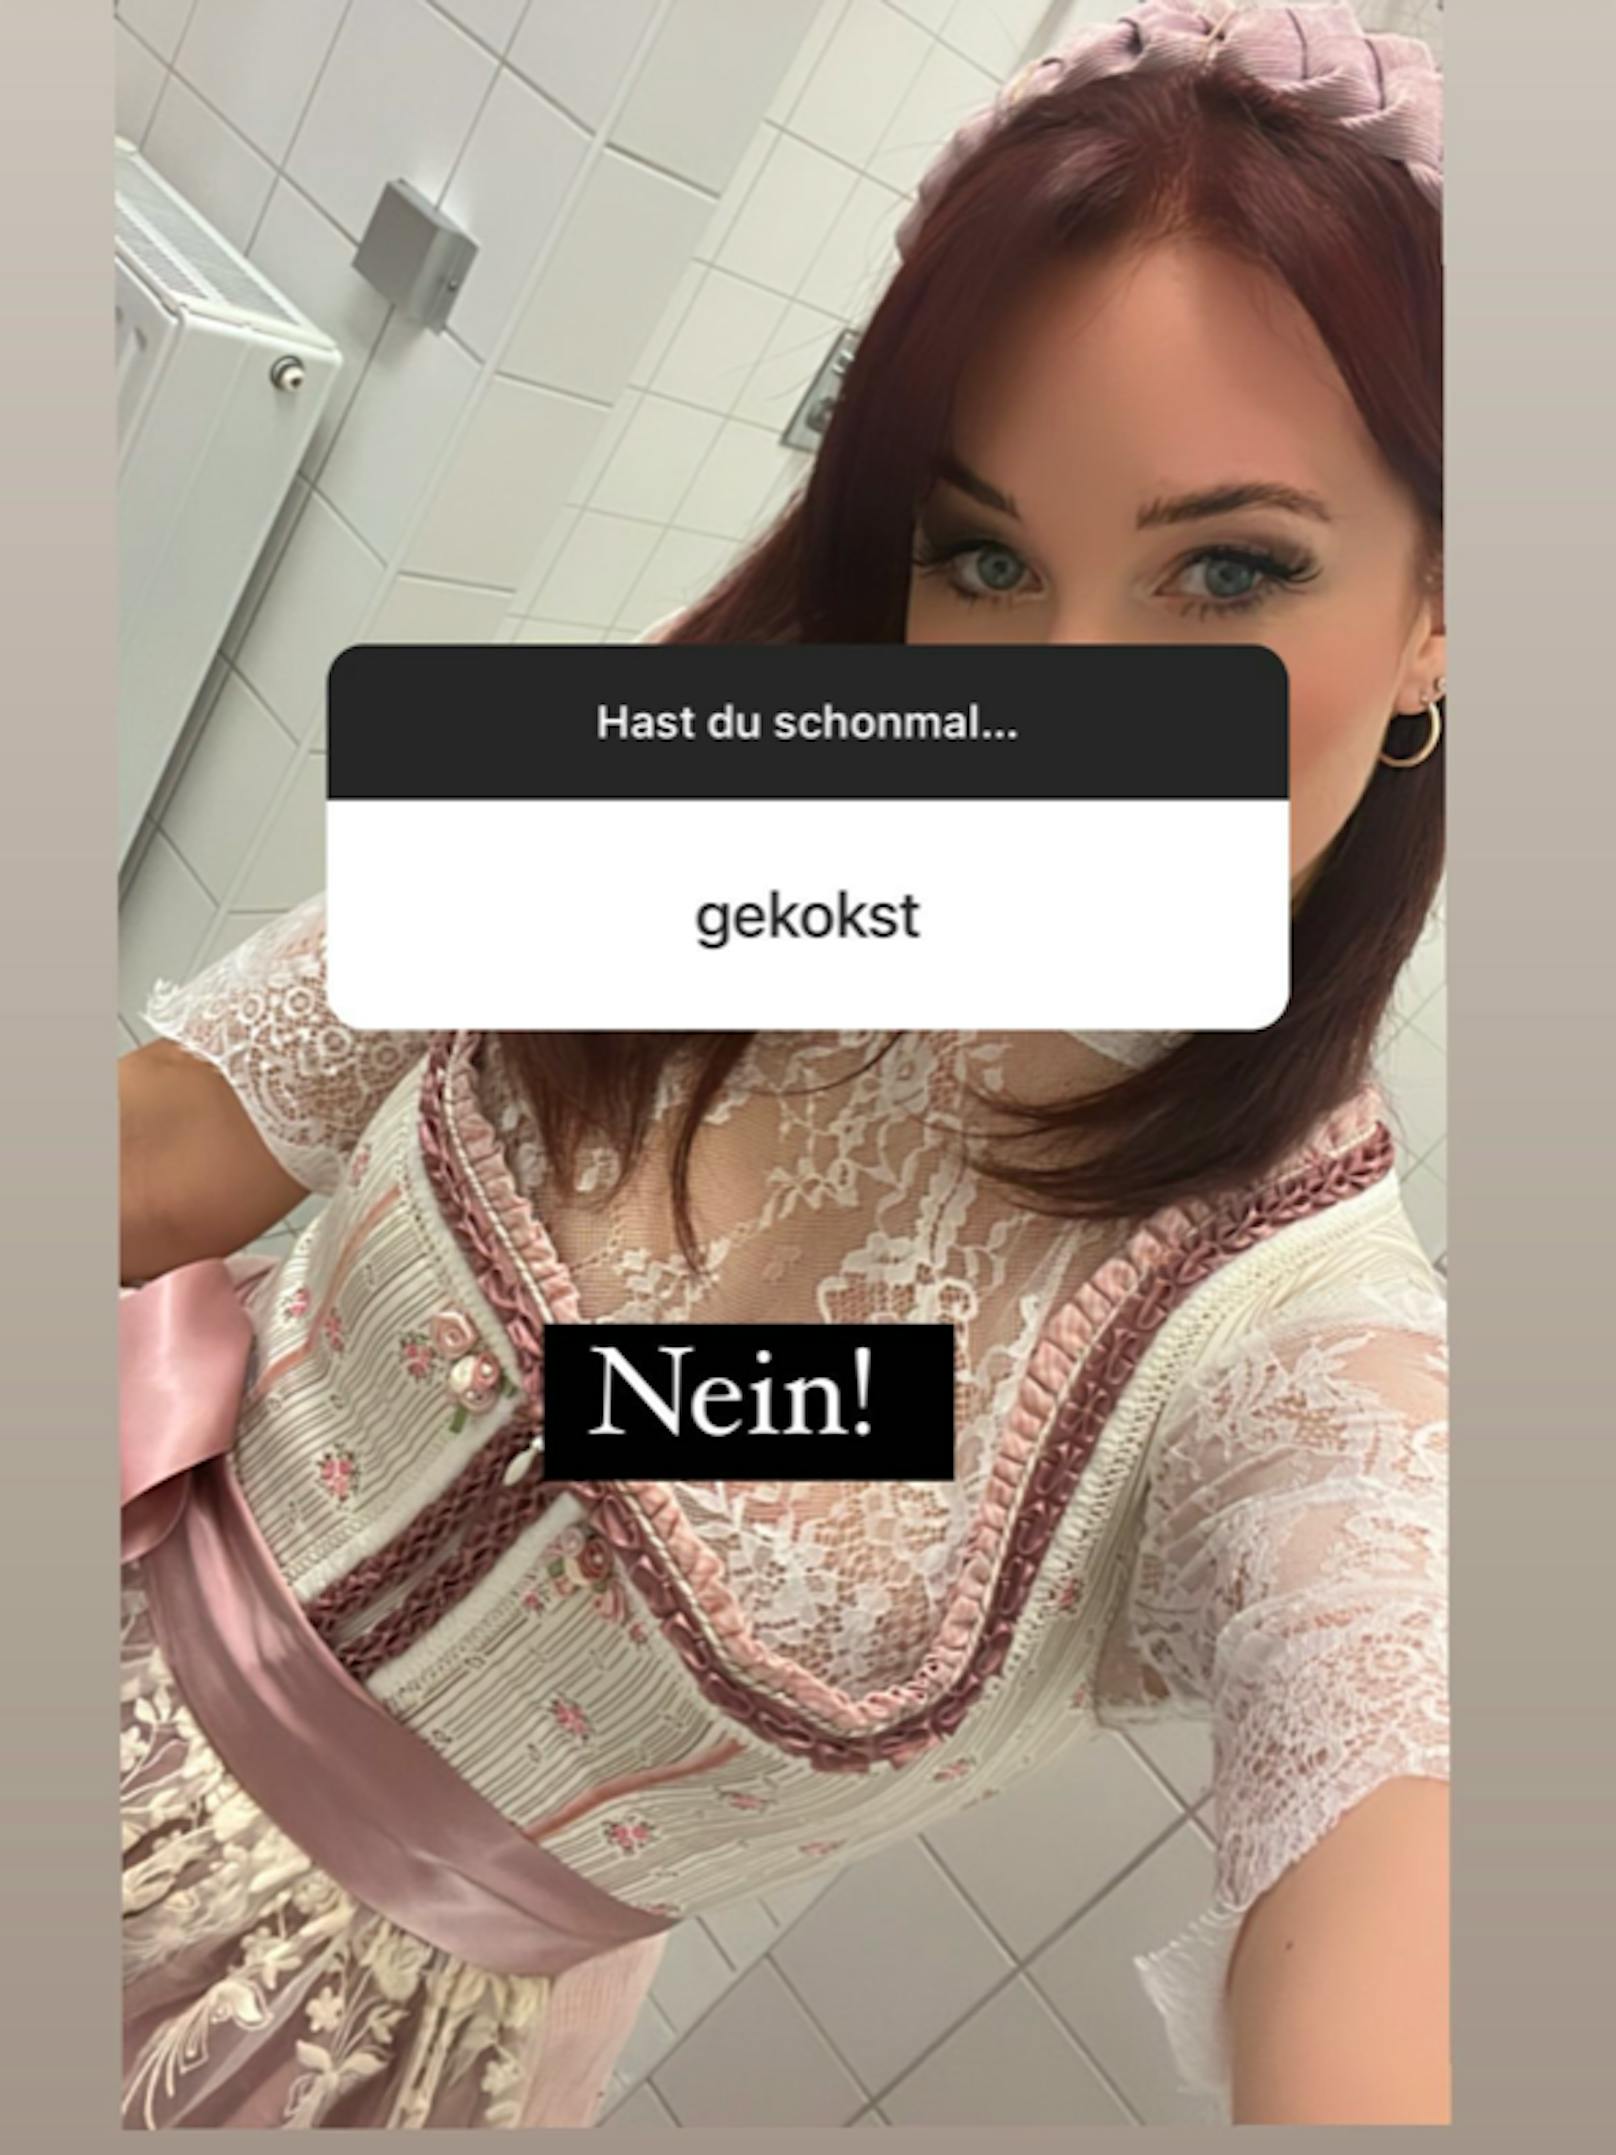 Berenice veranstaltete kürzlich eine Fragerunde auf Instagram. Ihre Fans nutzten die Chance, um der Gabalier-Sängerin pikante Fragen zu stellen.